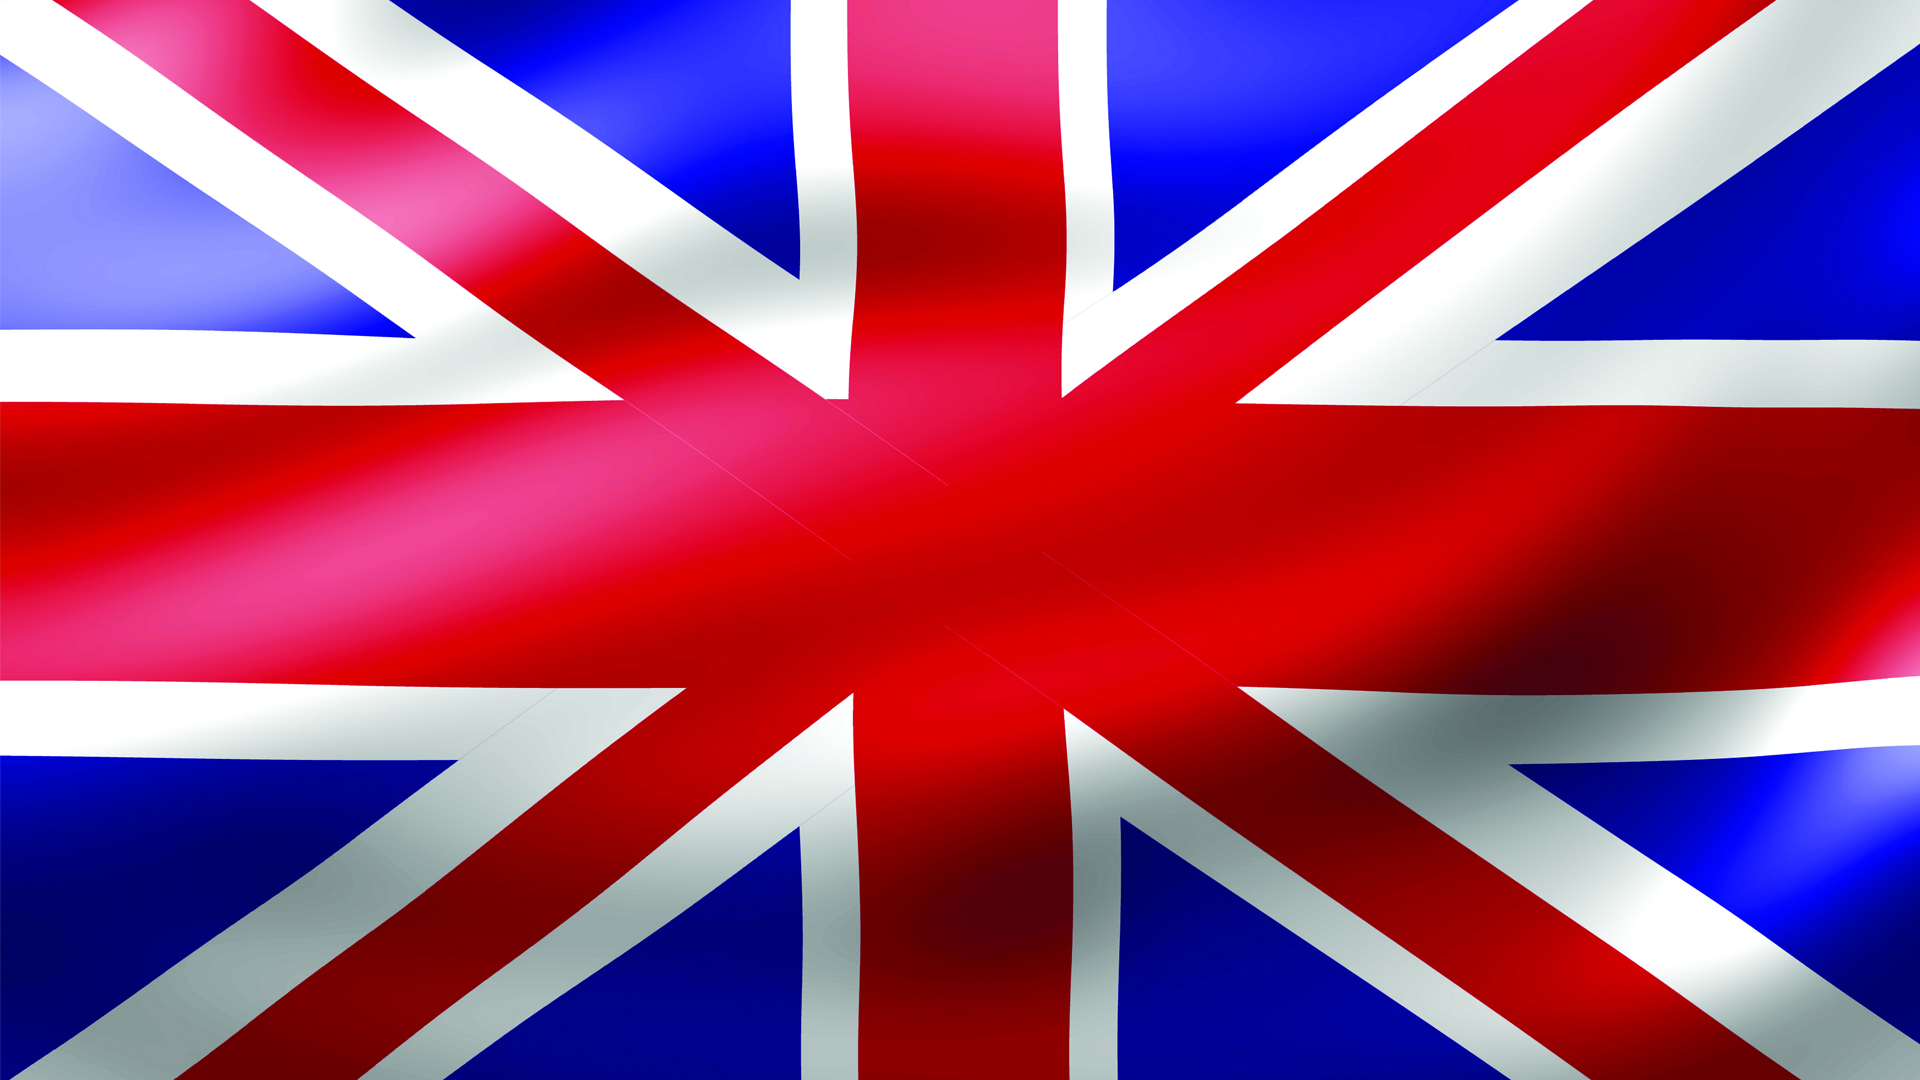 Uk h. Флаг Великобритании. Буюк Британия флаг. Ф̆̈л̆̈ӑ̈г̆̈ Ӑ̈н̆̈г̆̈л̆̈й̈я̆̈. Цвета британского флага.